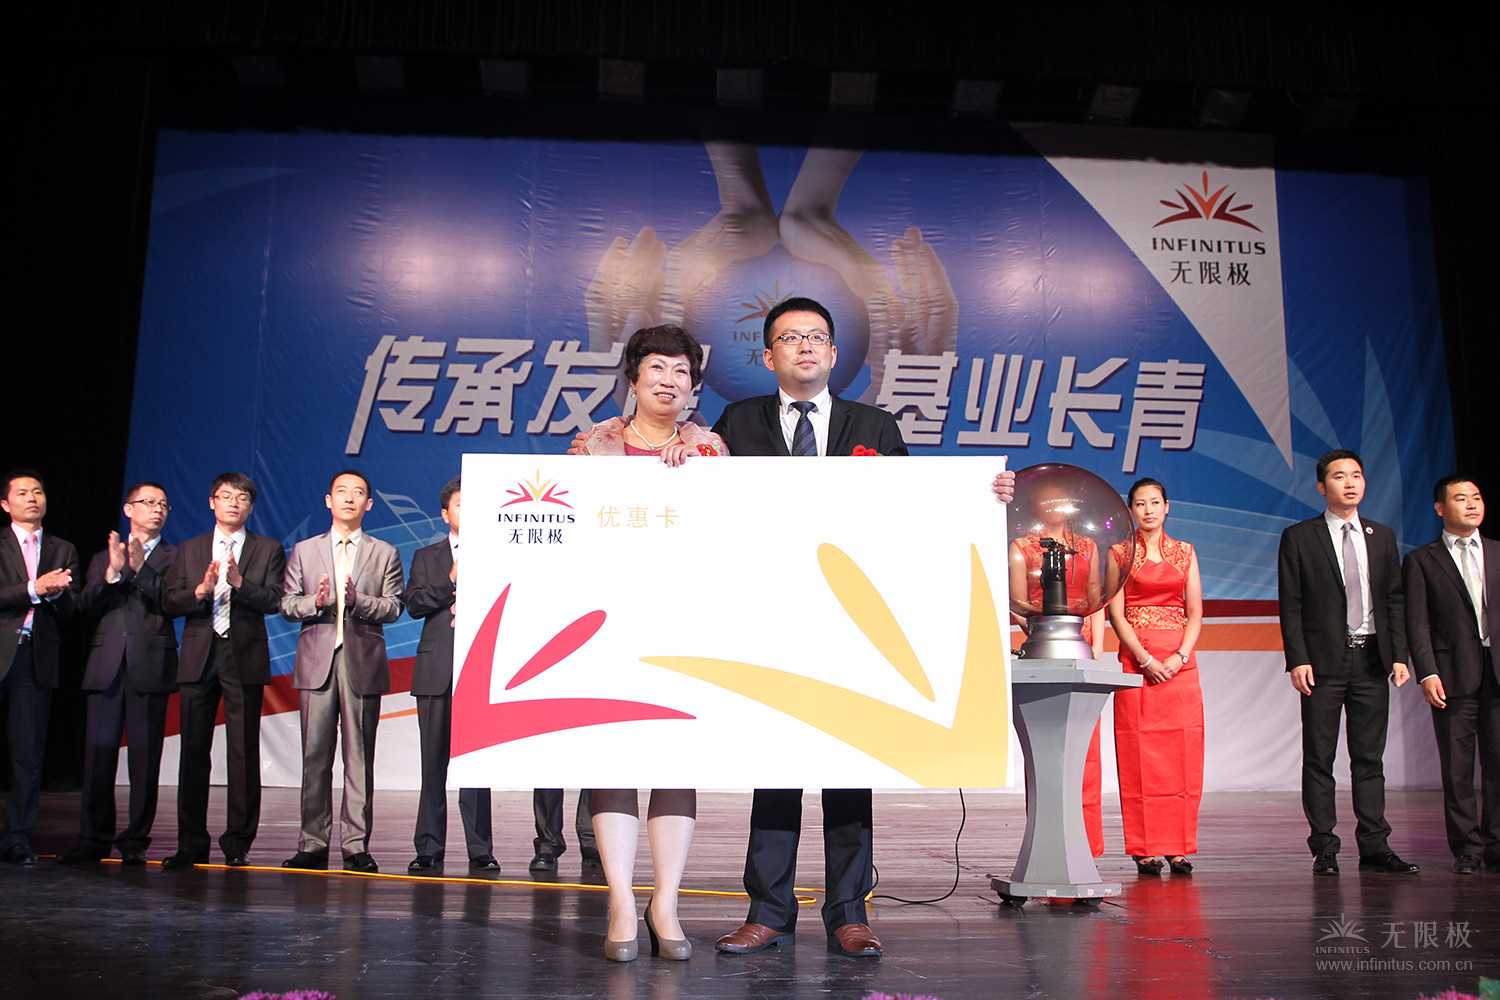 （加一张）2014年6月20日上海，在无限极首场“梦想接力”活动上，周英峰把自己奋斗了8年的无限极事业传承给了儿子杨罡。